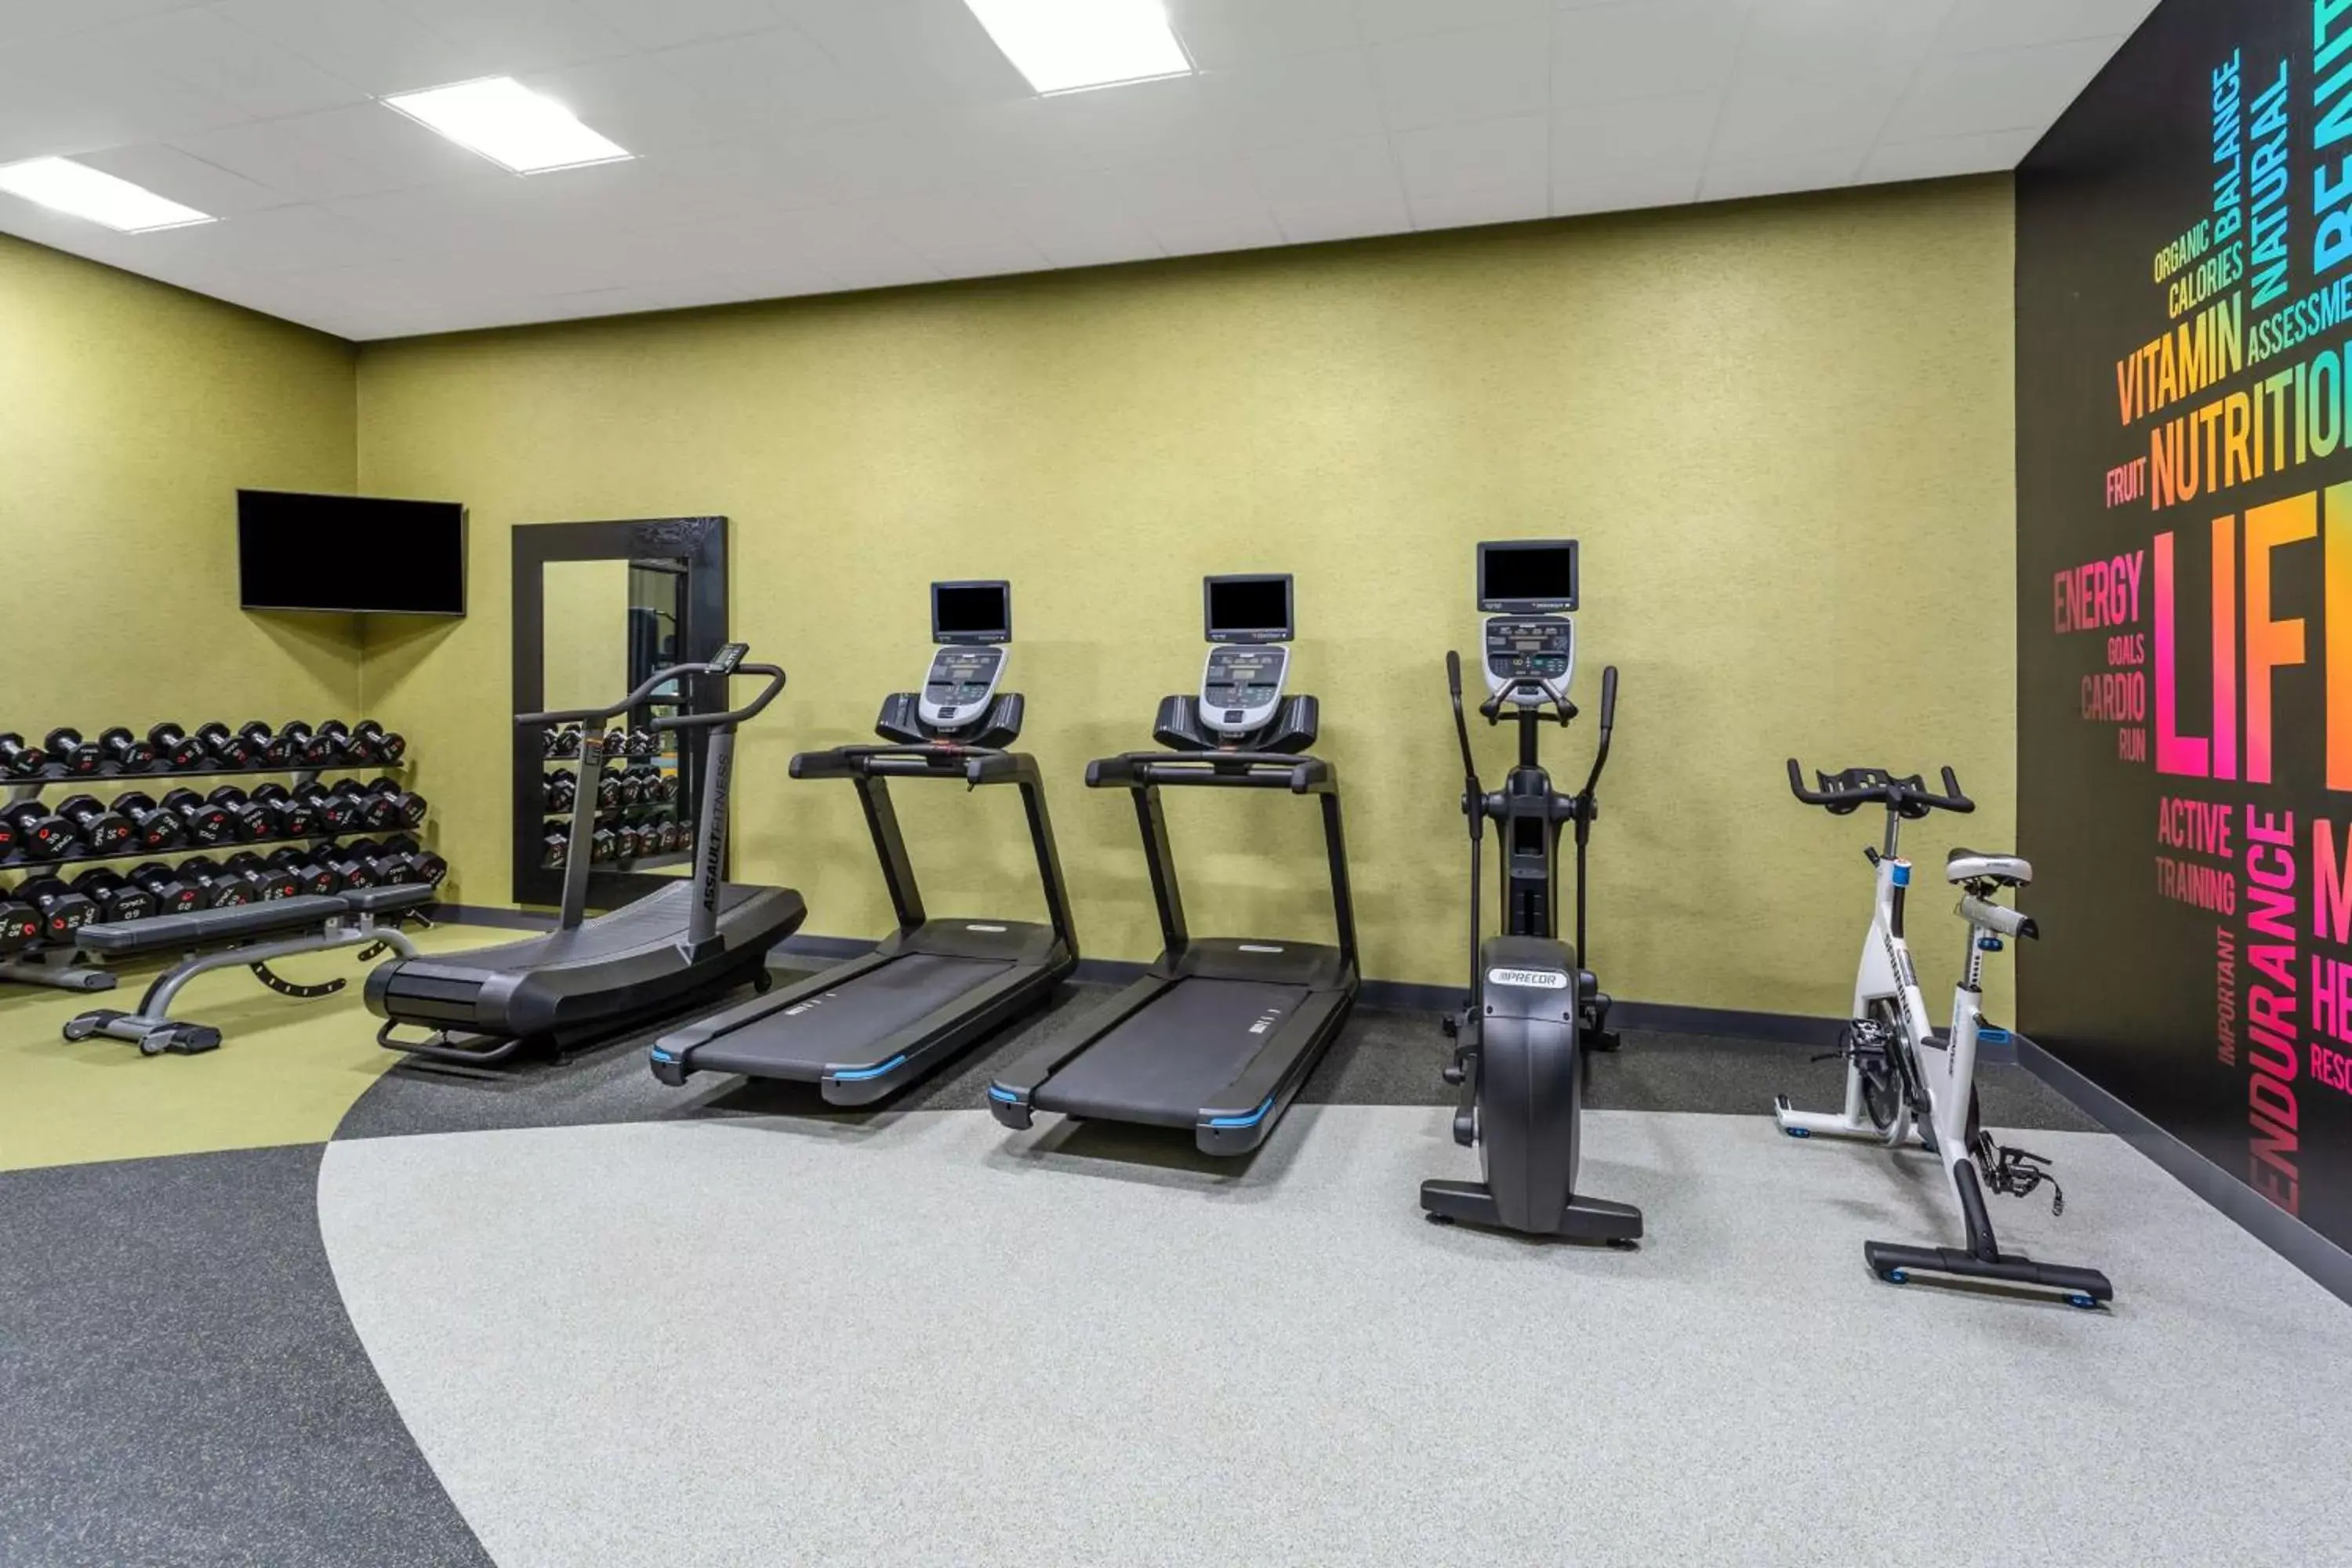 Fitness centre/facilities, Fitness Center/Facilities in Hilton Garden Inn Hays, KS